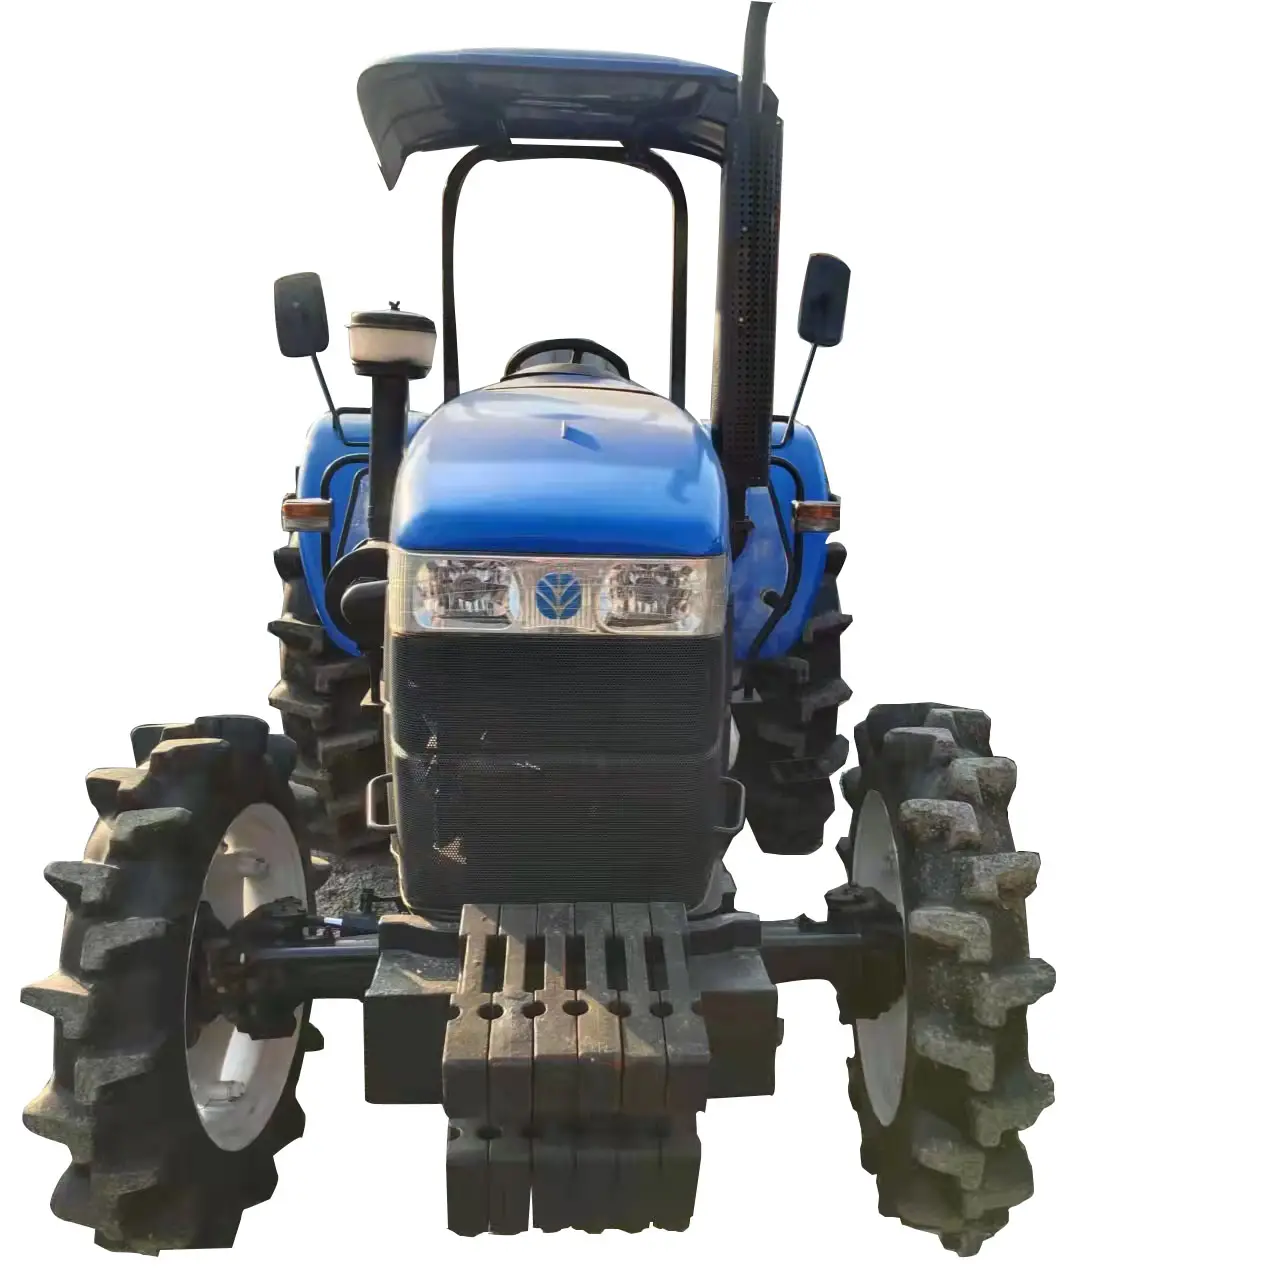 New Holland kullanılan 4X4 75HP-90HP Agricola tarım makineleri kullanılan çiftlik Massey Ferguson Usados traktörleri fiyat satılık